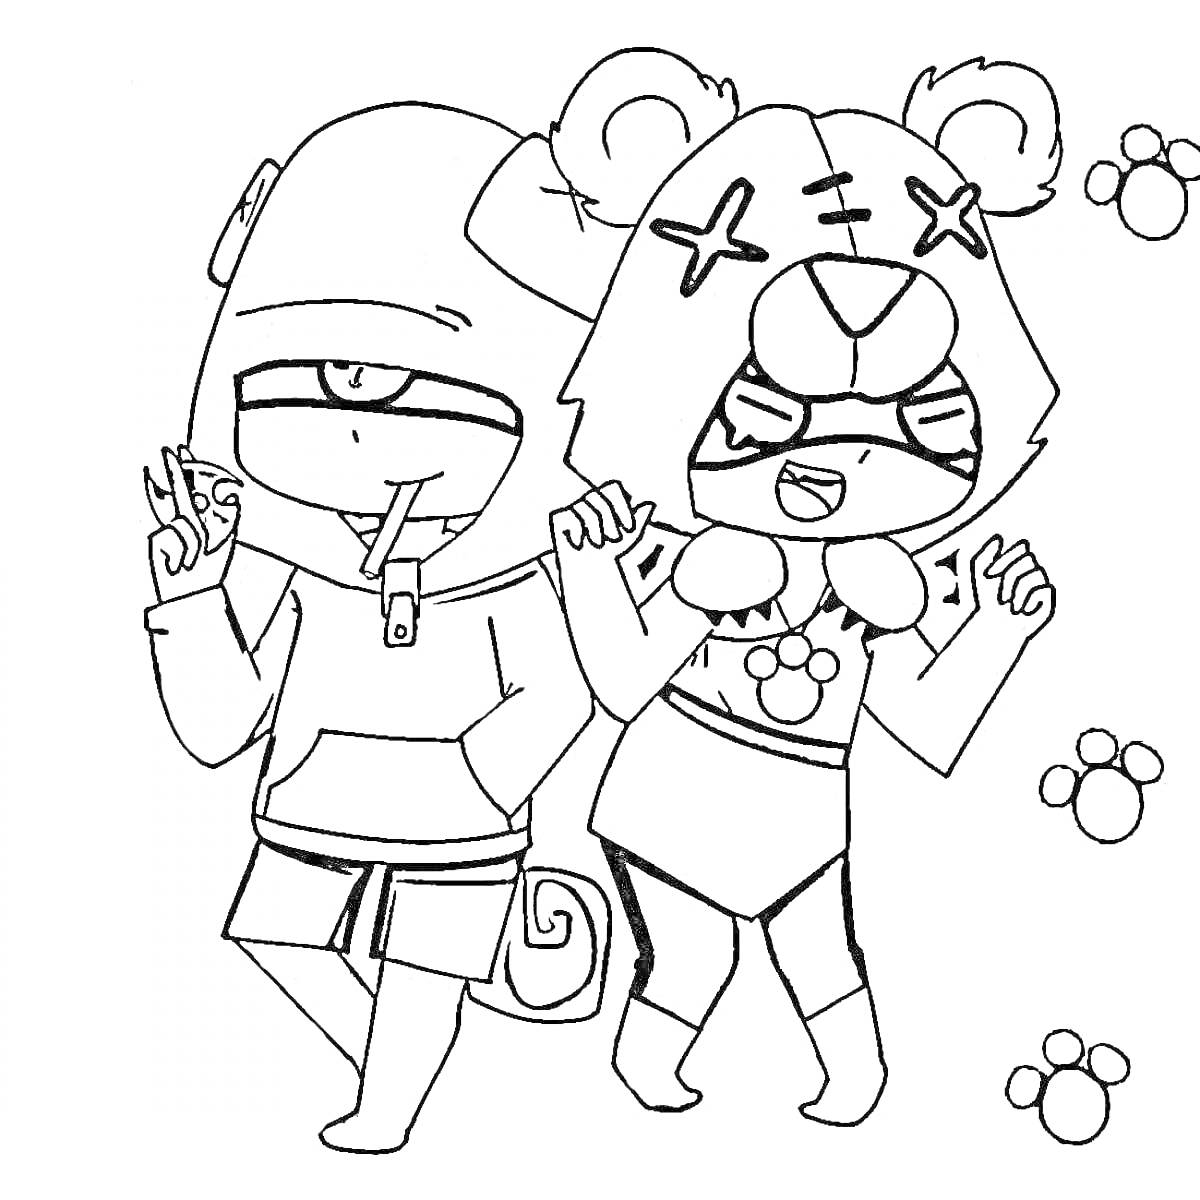 Два персонажа в костюмах, один с хвостом и шапкой с одним глазом, другой в костюме медведя с ушами и крестами на глазах, следы лап на фоне